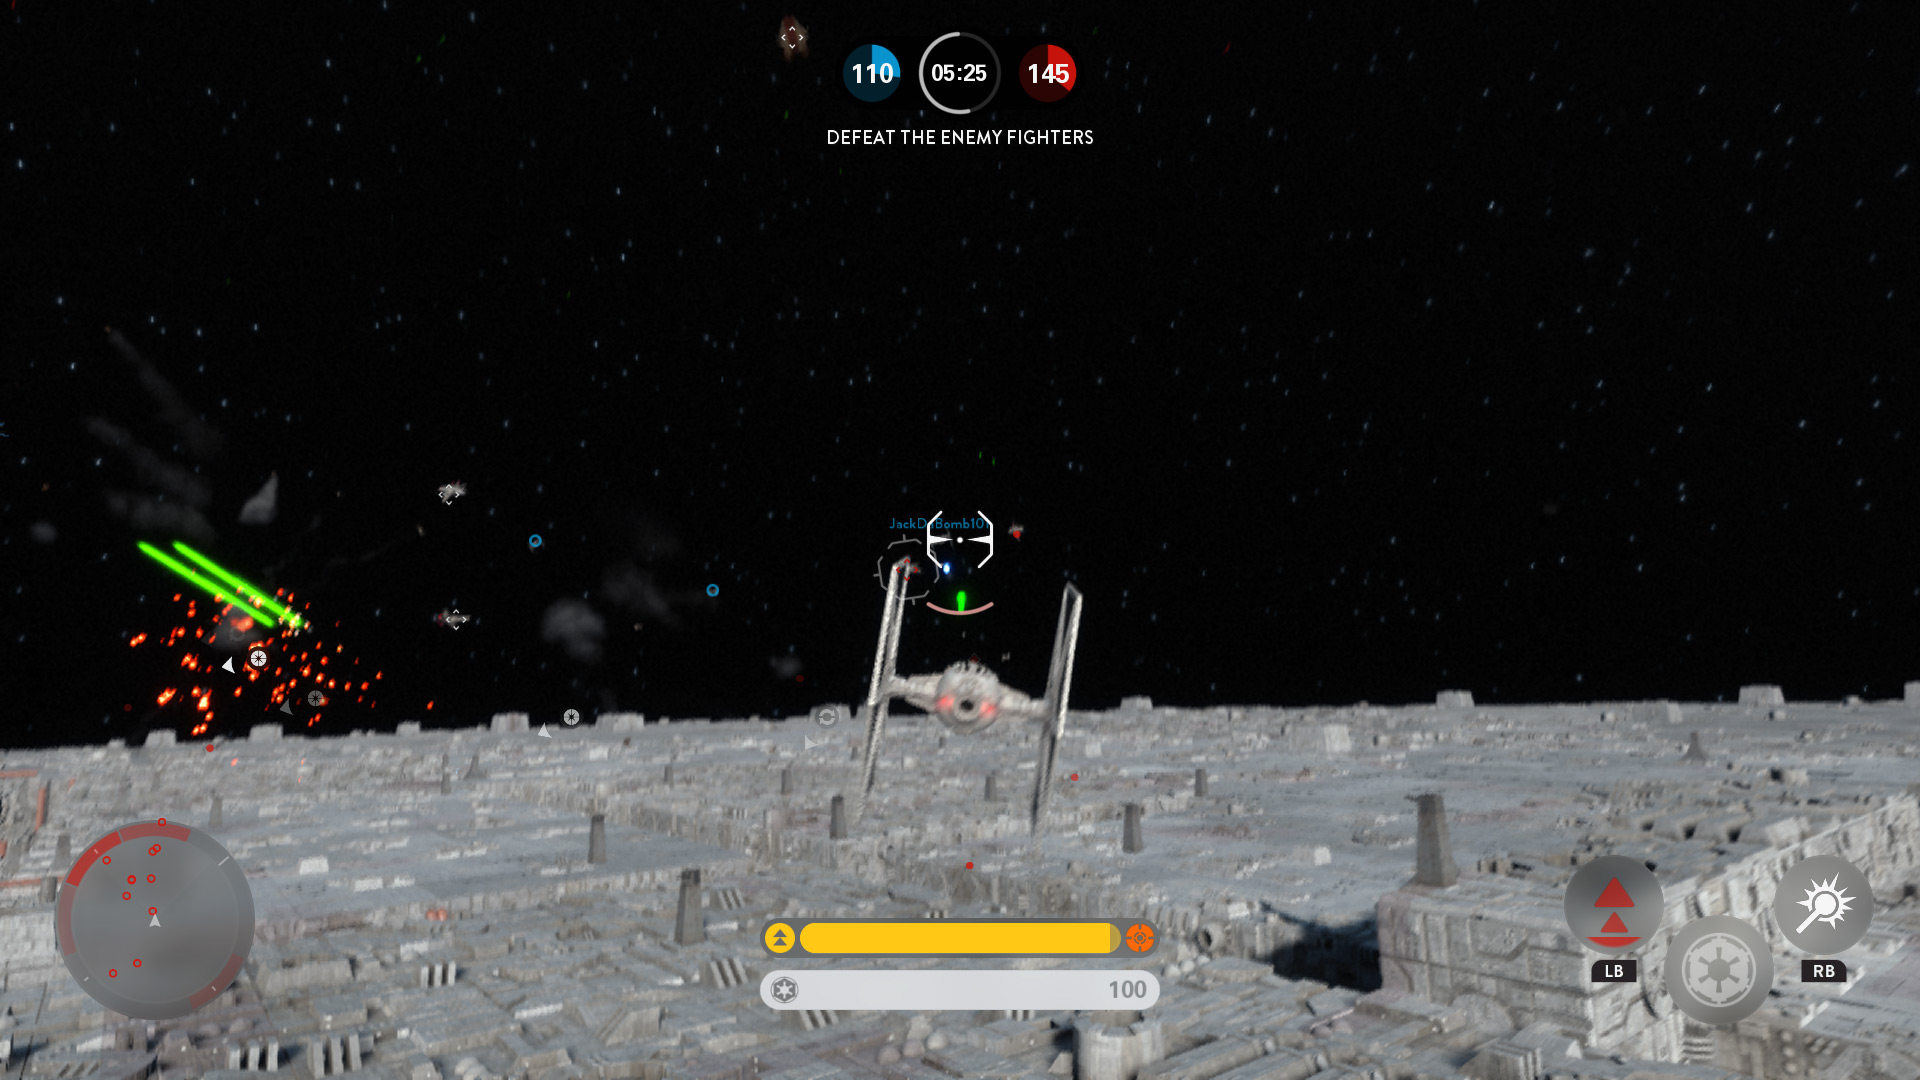 Star Wars Battlefront: Death Star DLC